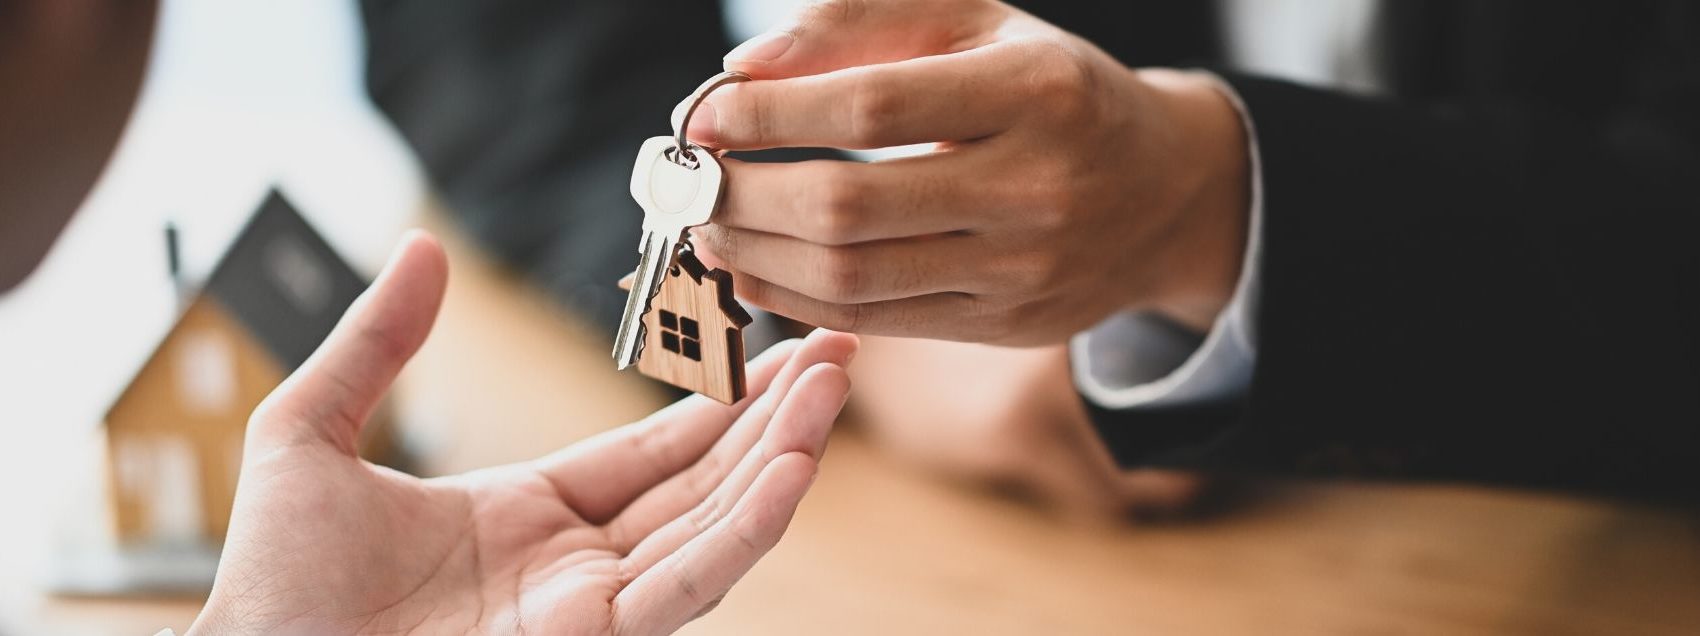 mortgage lender handing house keys to homeowner